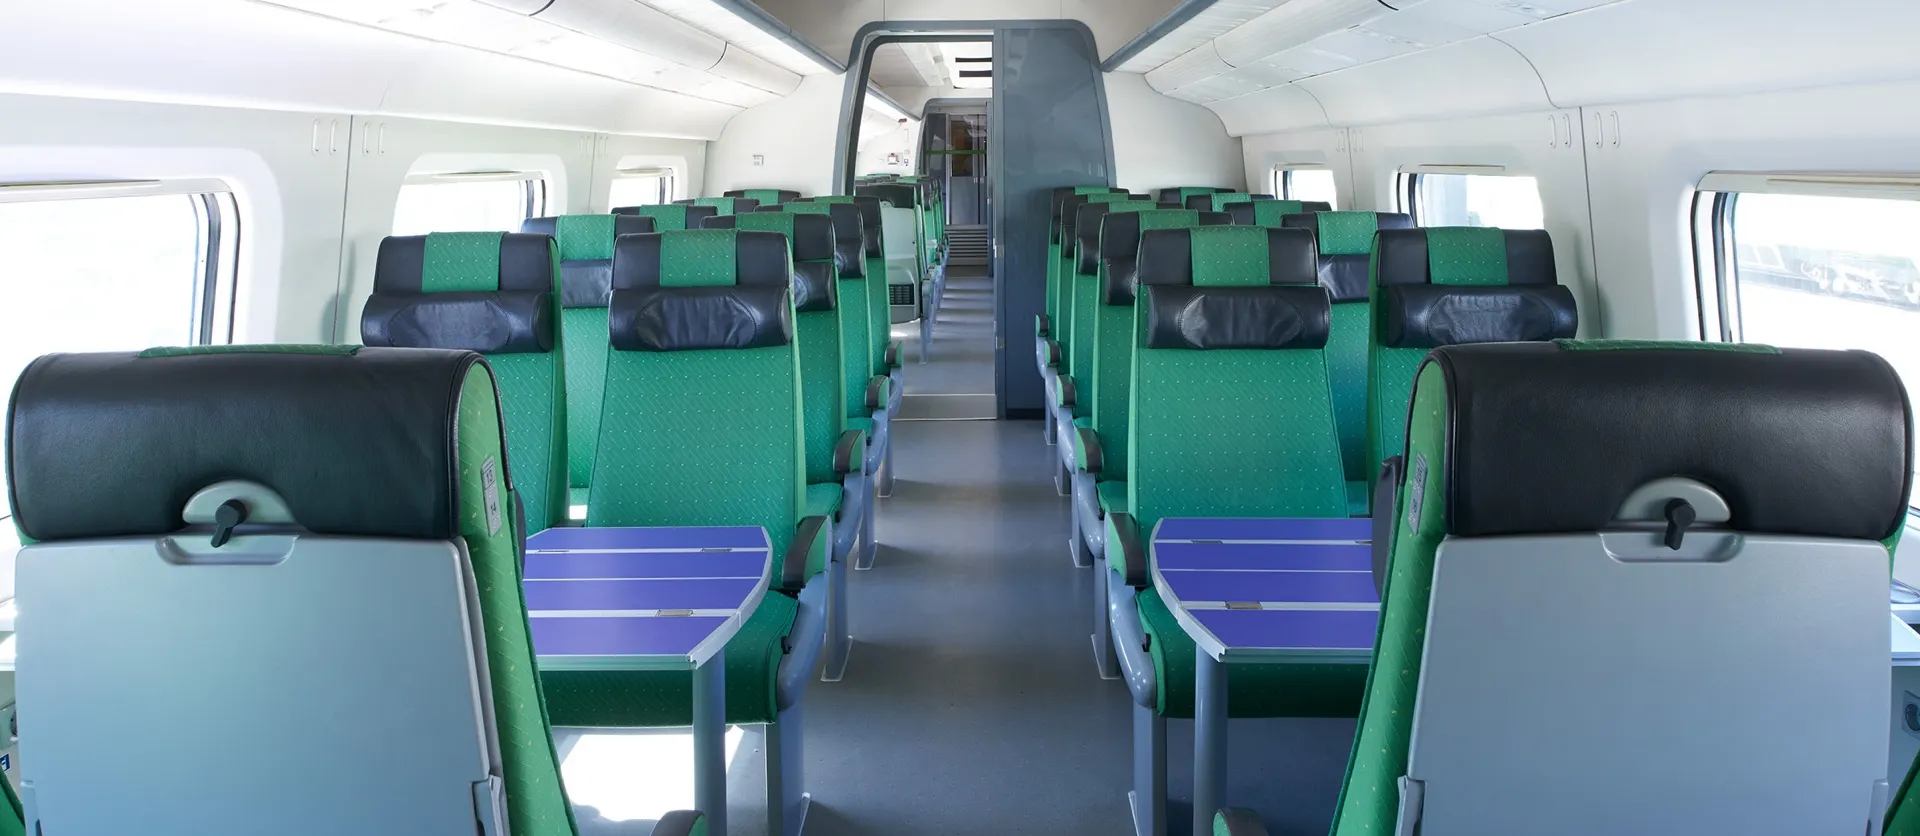 Pendolino-tågen har två sittplatser bredvid varandra på båda sidor av mittgången. Tågen har även bordsgrupper för fyra personer.